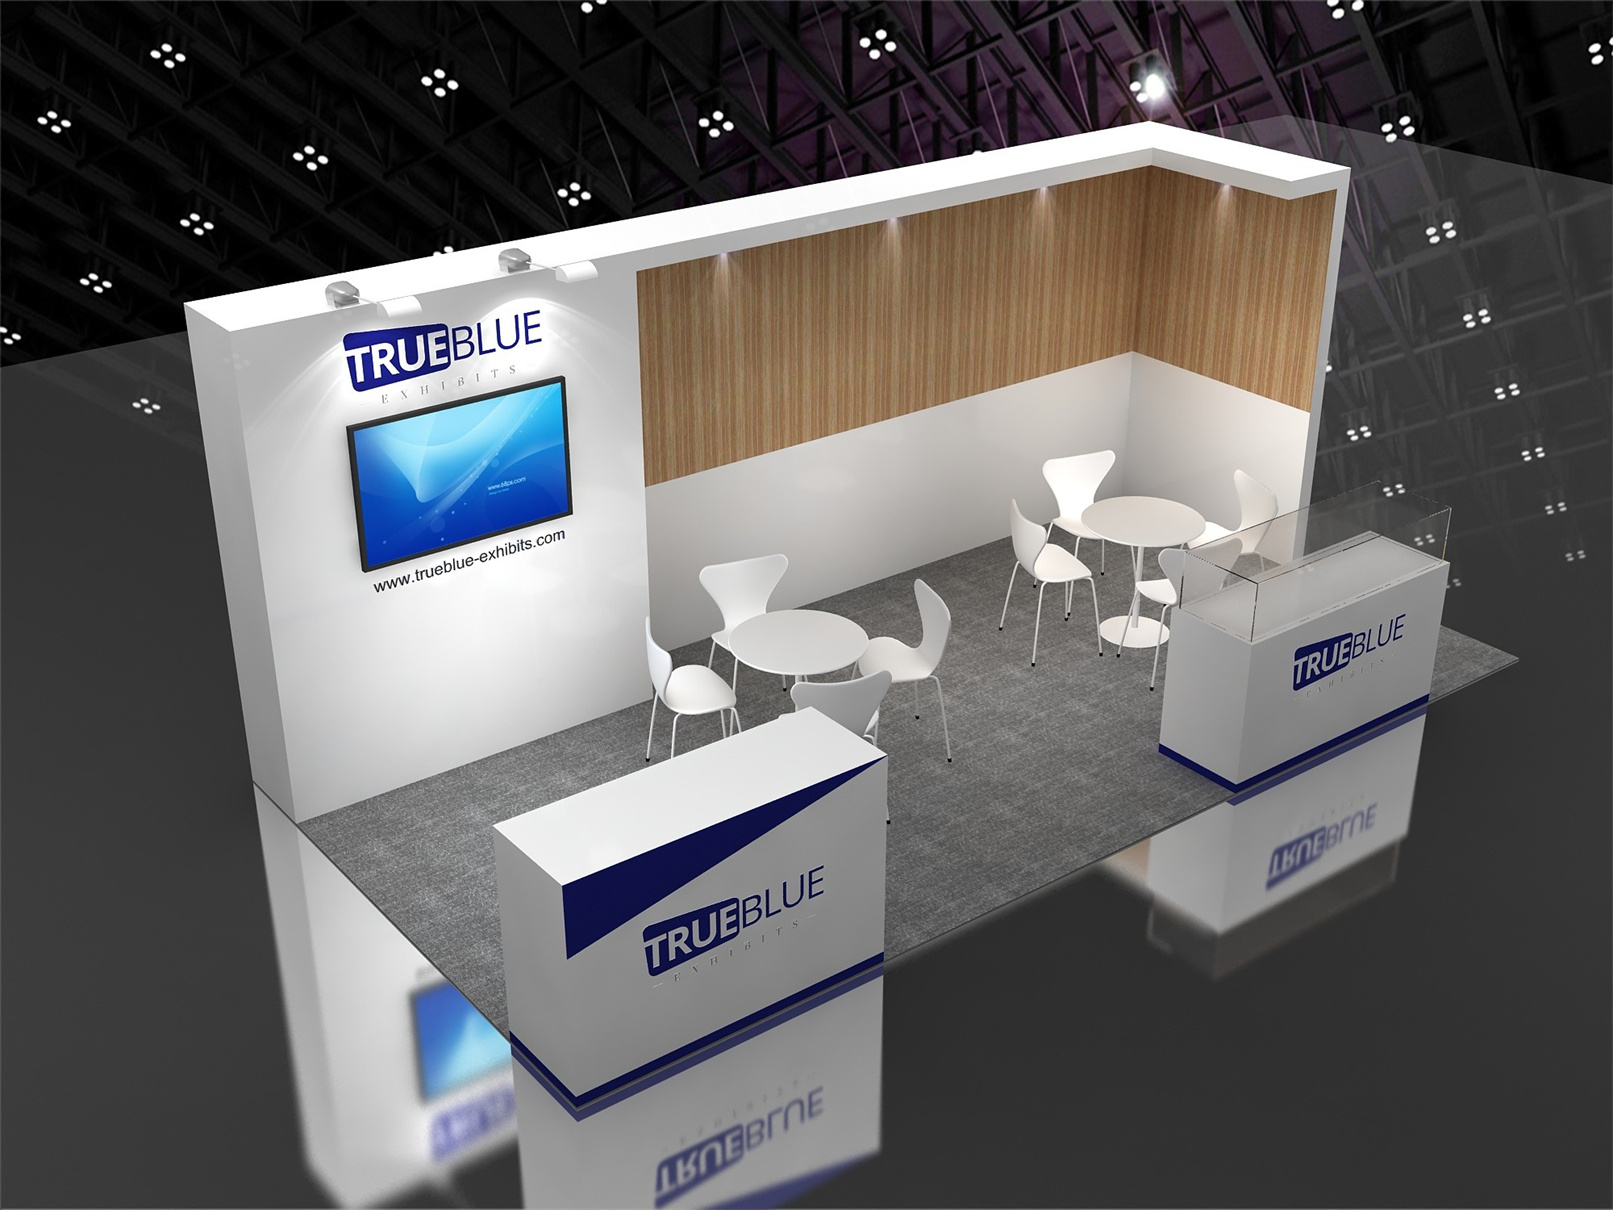 R21 10′ x 20′ Custom Trade Show Booth Design